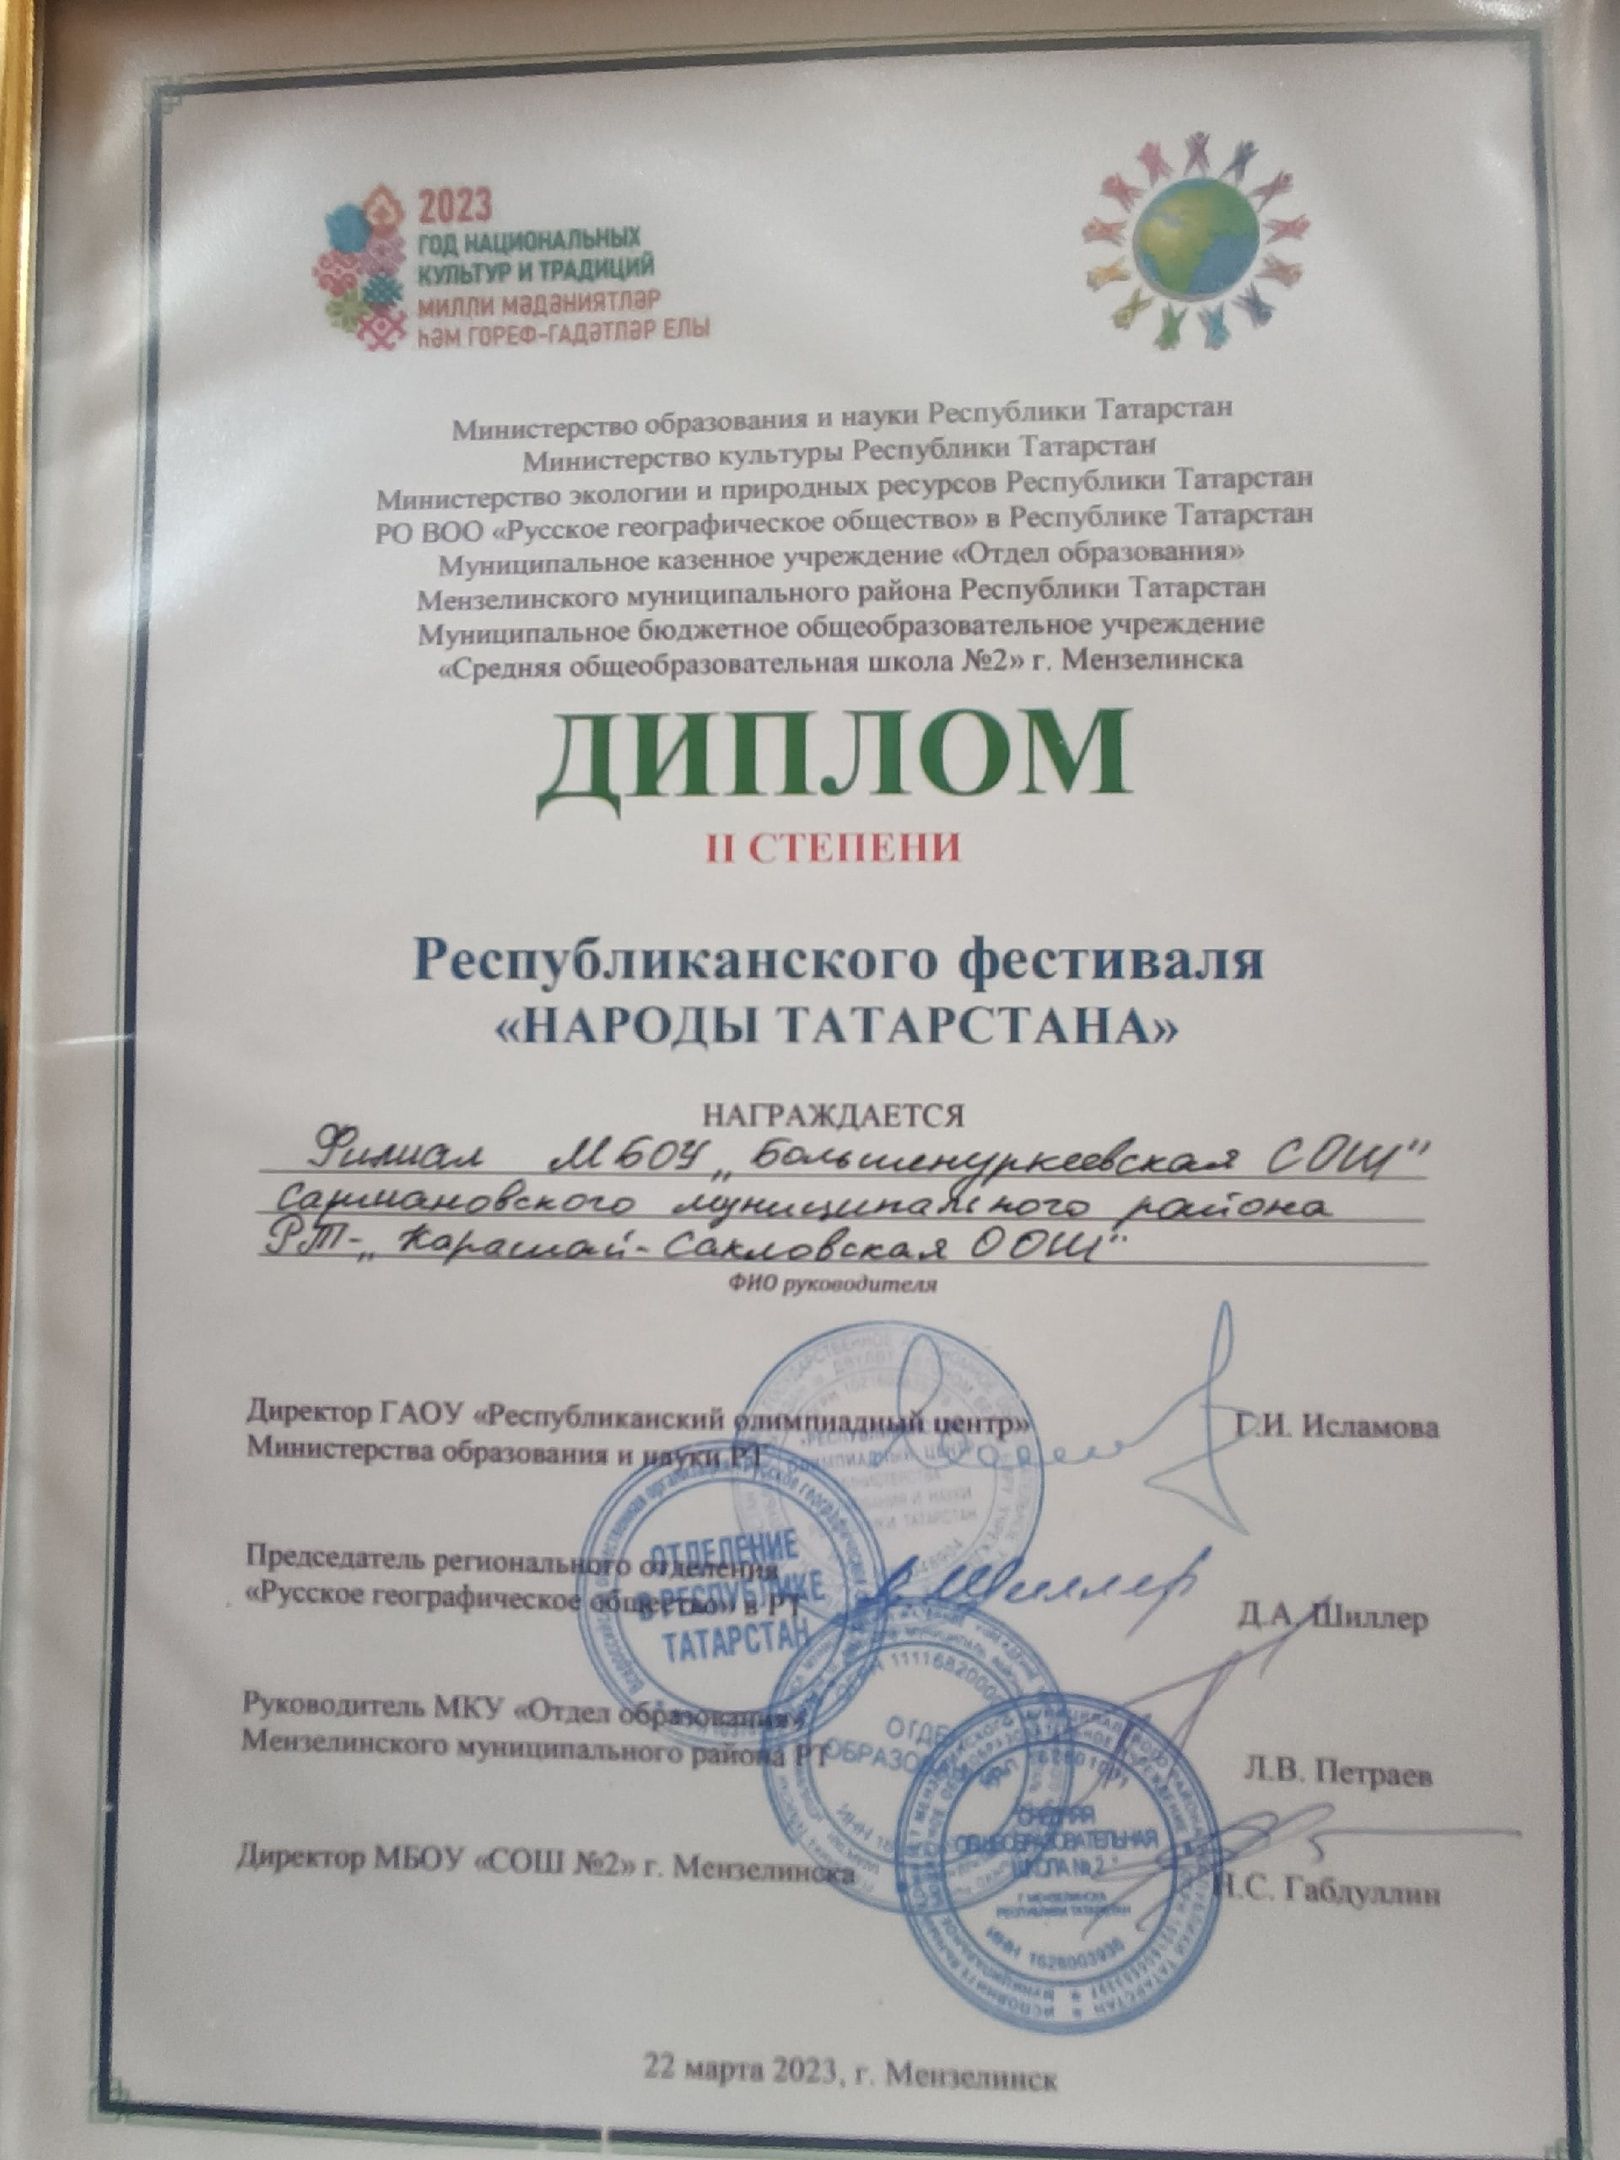 Ученики Карашай-Сакловской школы стали призерами республиканского фестиваля